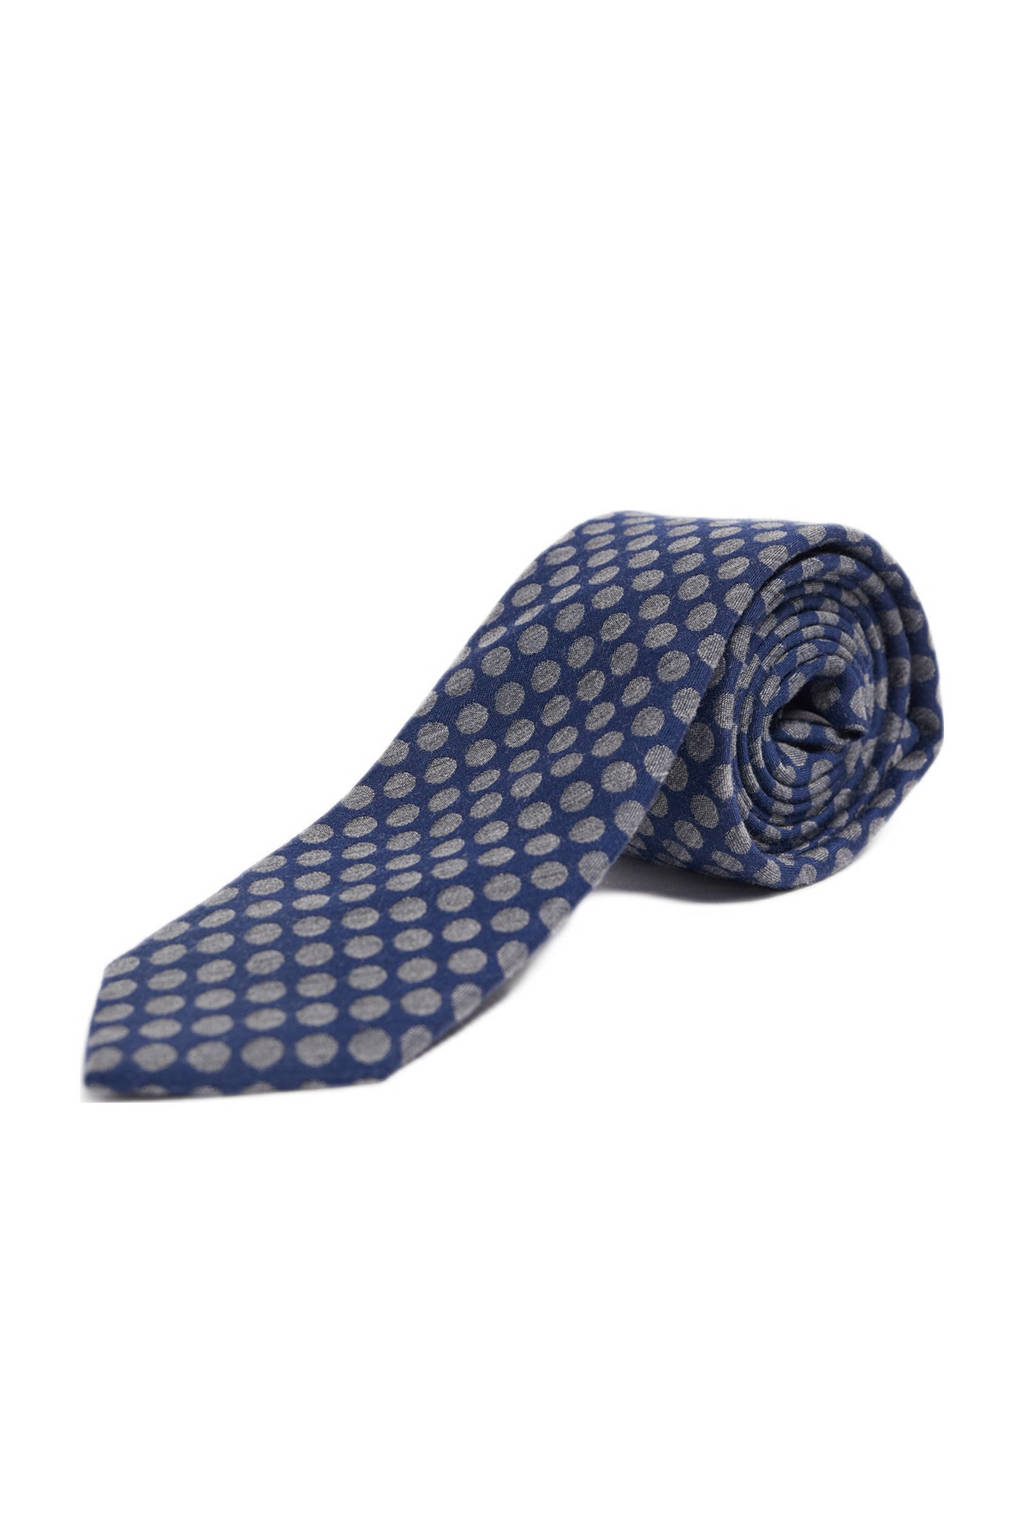 Ga terug verdwijnen Overdreven WE Fashion stropdas met all-over stippenprint donkerblauw | wehkamp